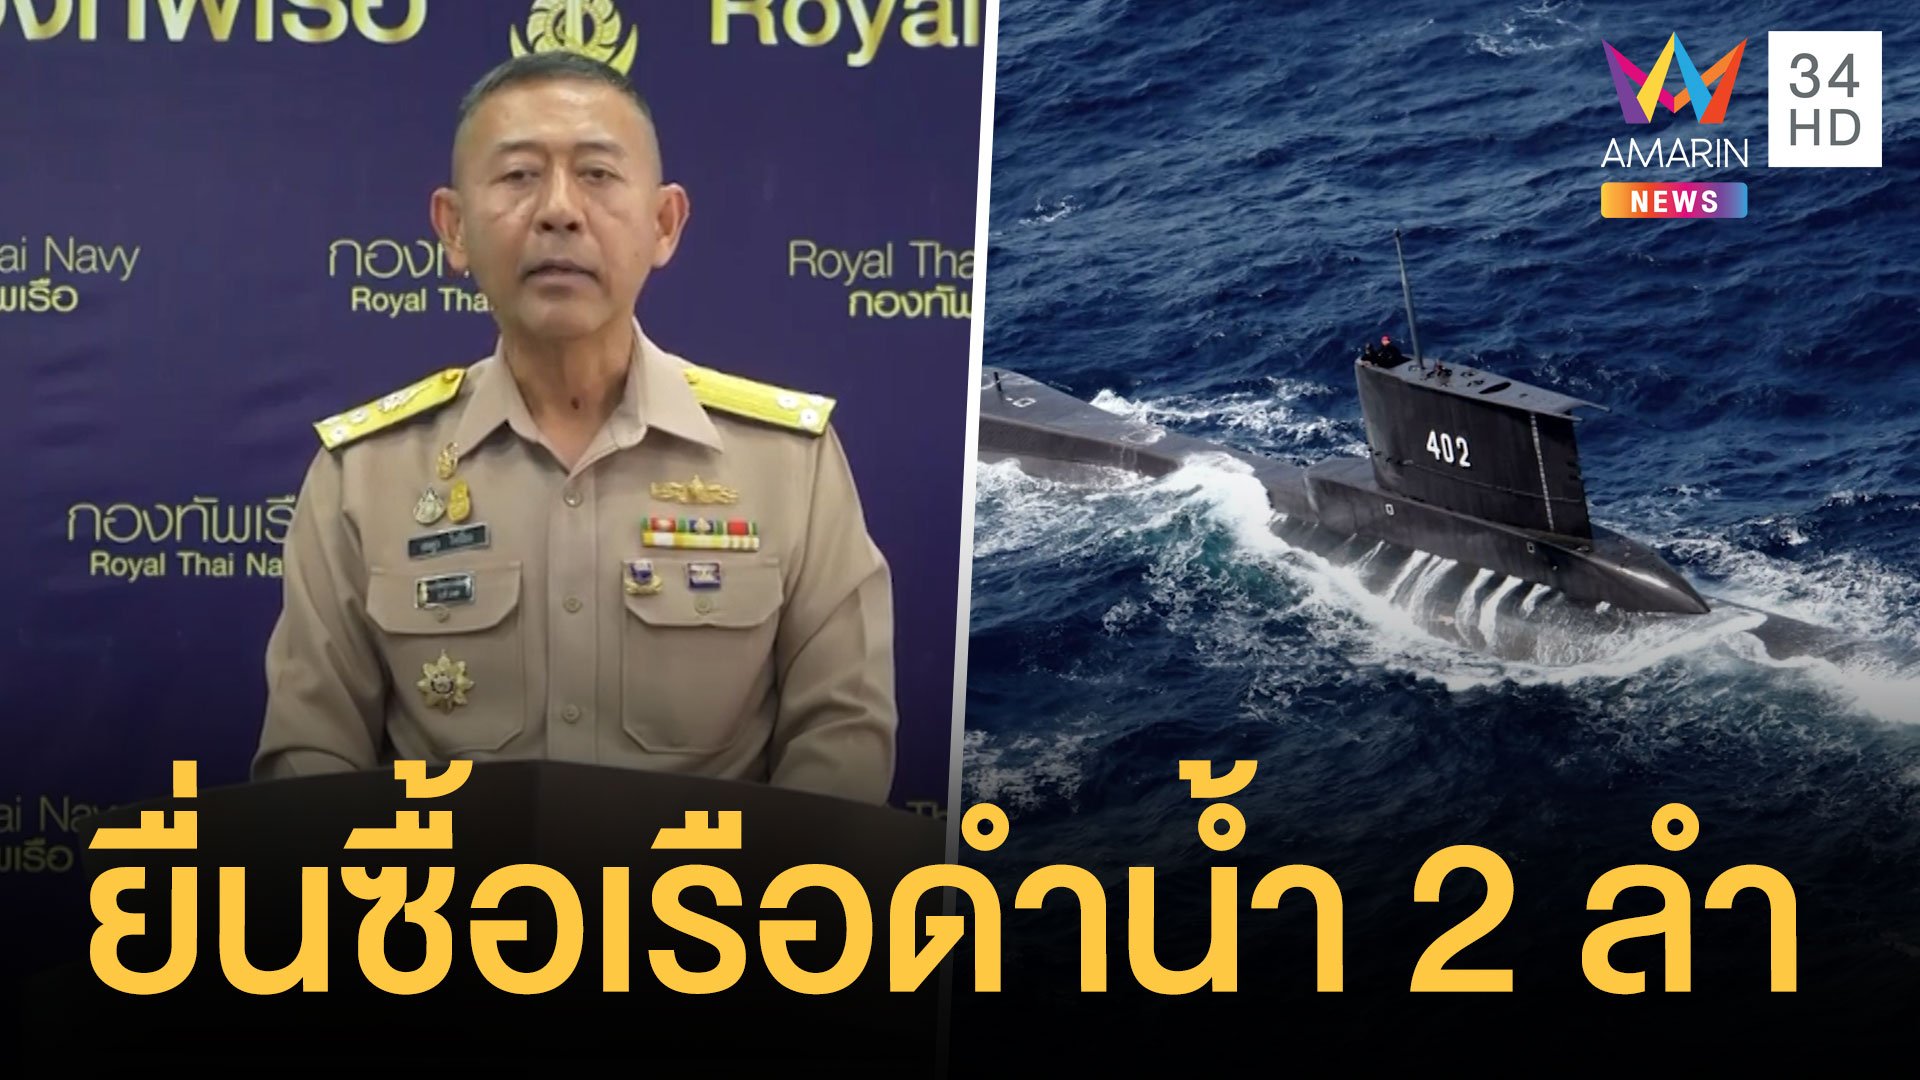 กองทัพเรือเสนอซื้อเรือดำน้ำ 2 ลำ มูลค่า 2.2 หมื่นล้าน | ข่าวอรุณอมรินทร์ | 18 ก.ค. 64 | AMARIN TVHD34